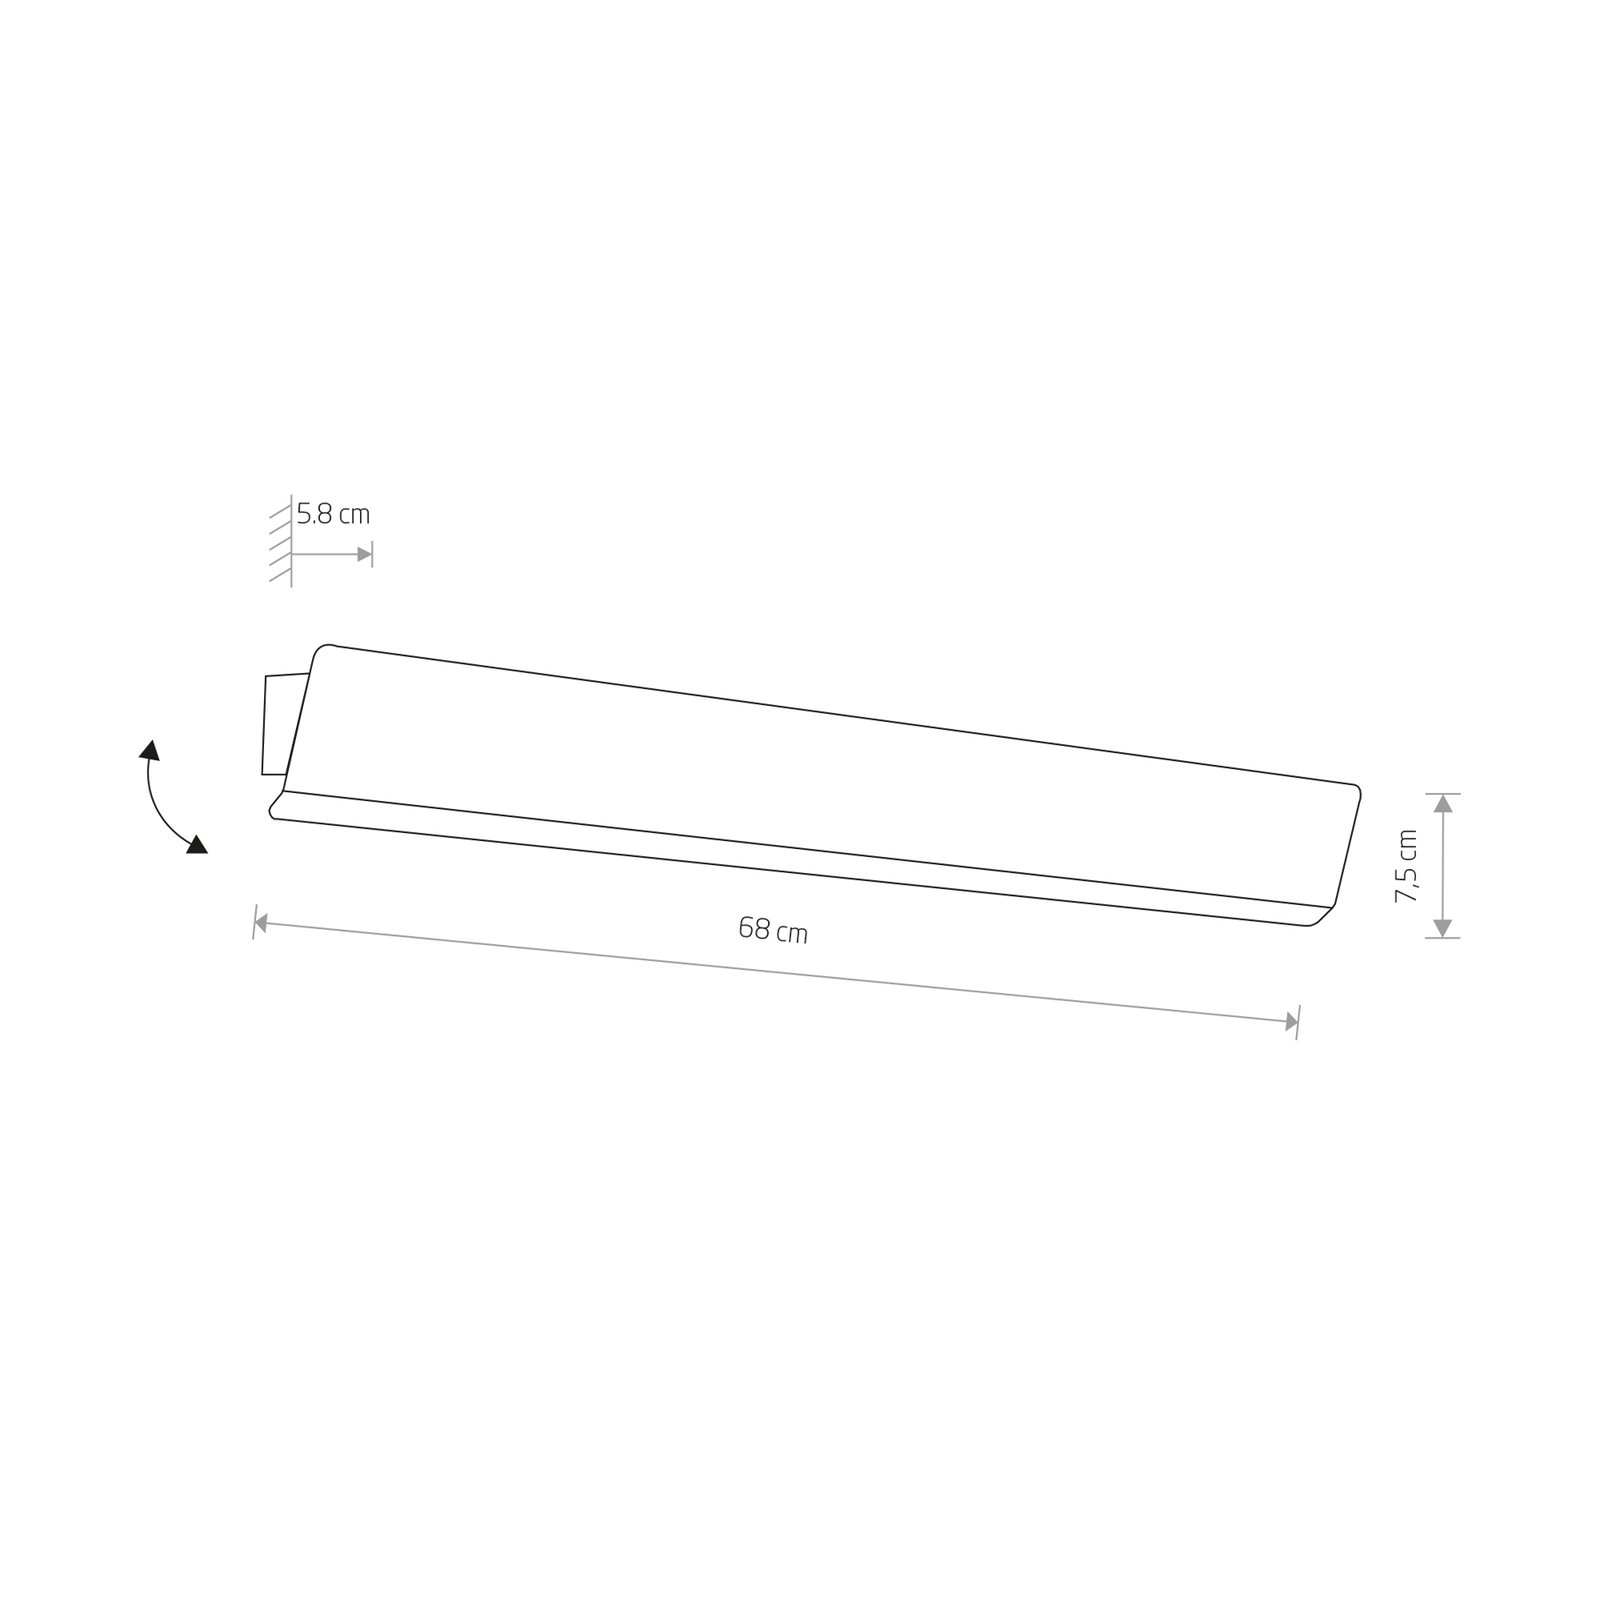 Wandlampe Wing, weiß, Stahl, Schalter, 68 cm breit